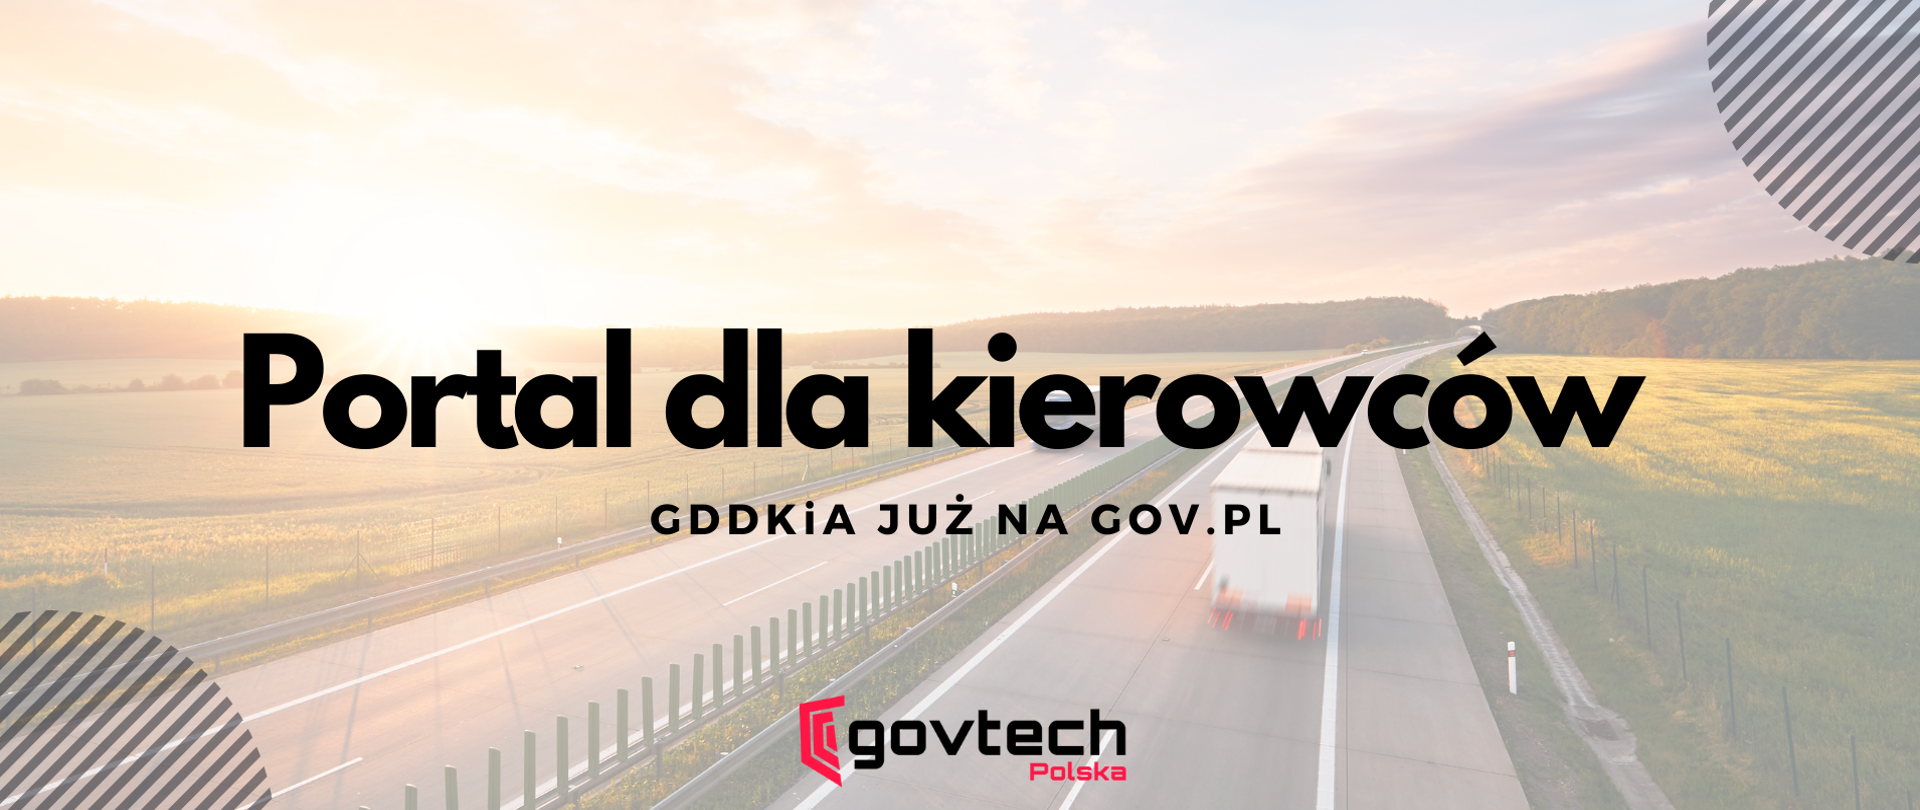 Grafika z napisem: Portal dla kierowców. GDDKiA już na gov.pl.